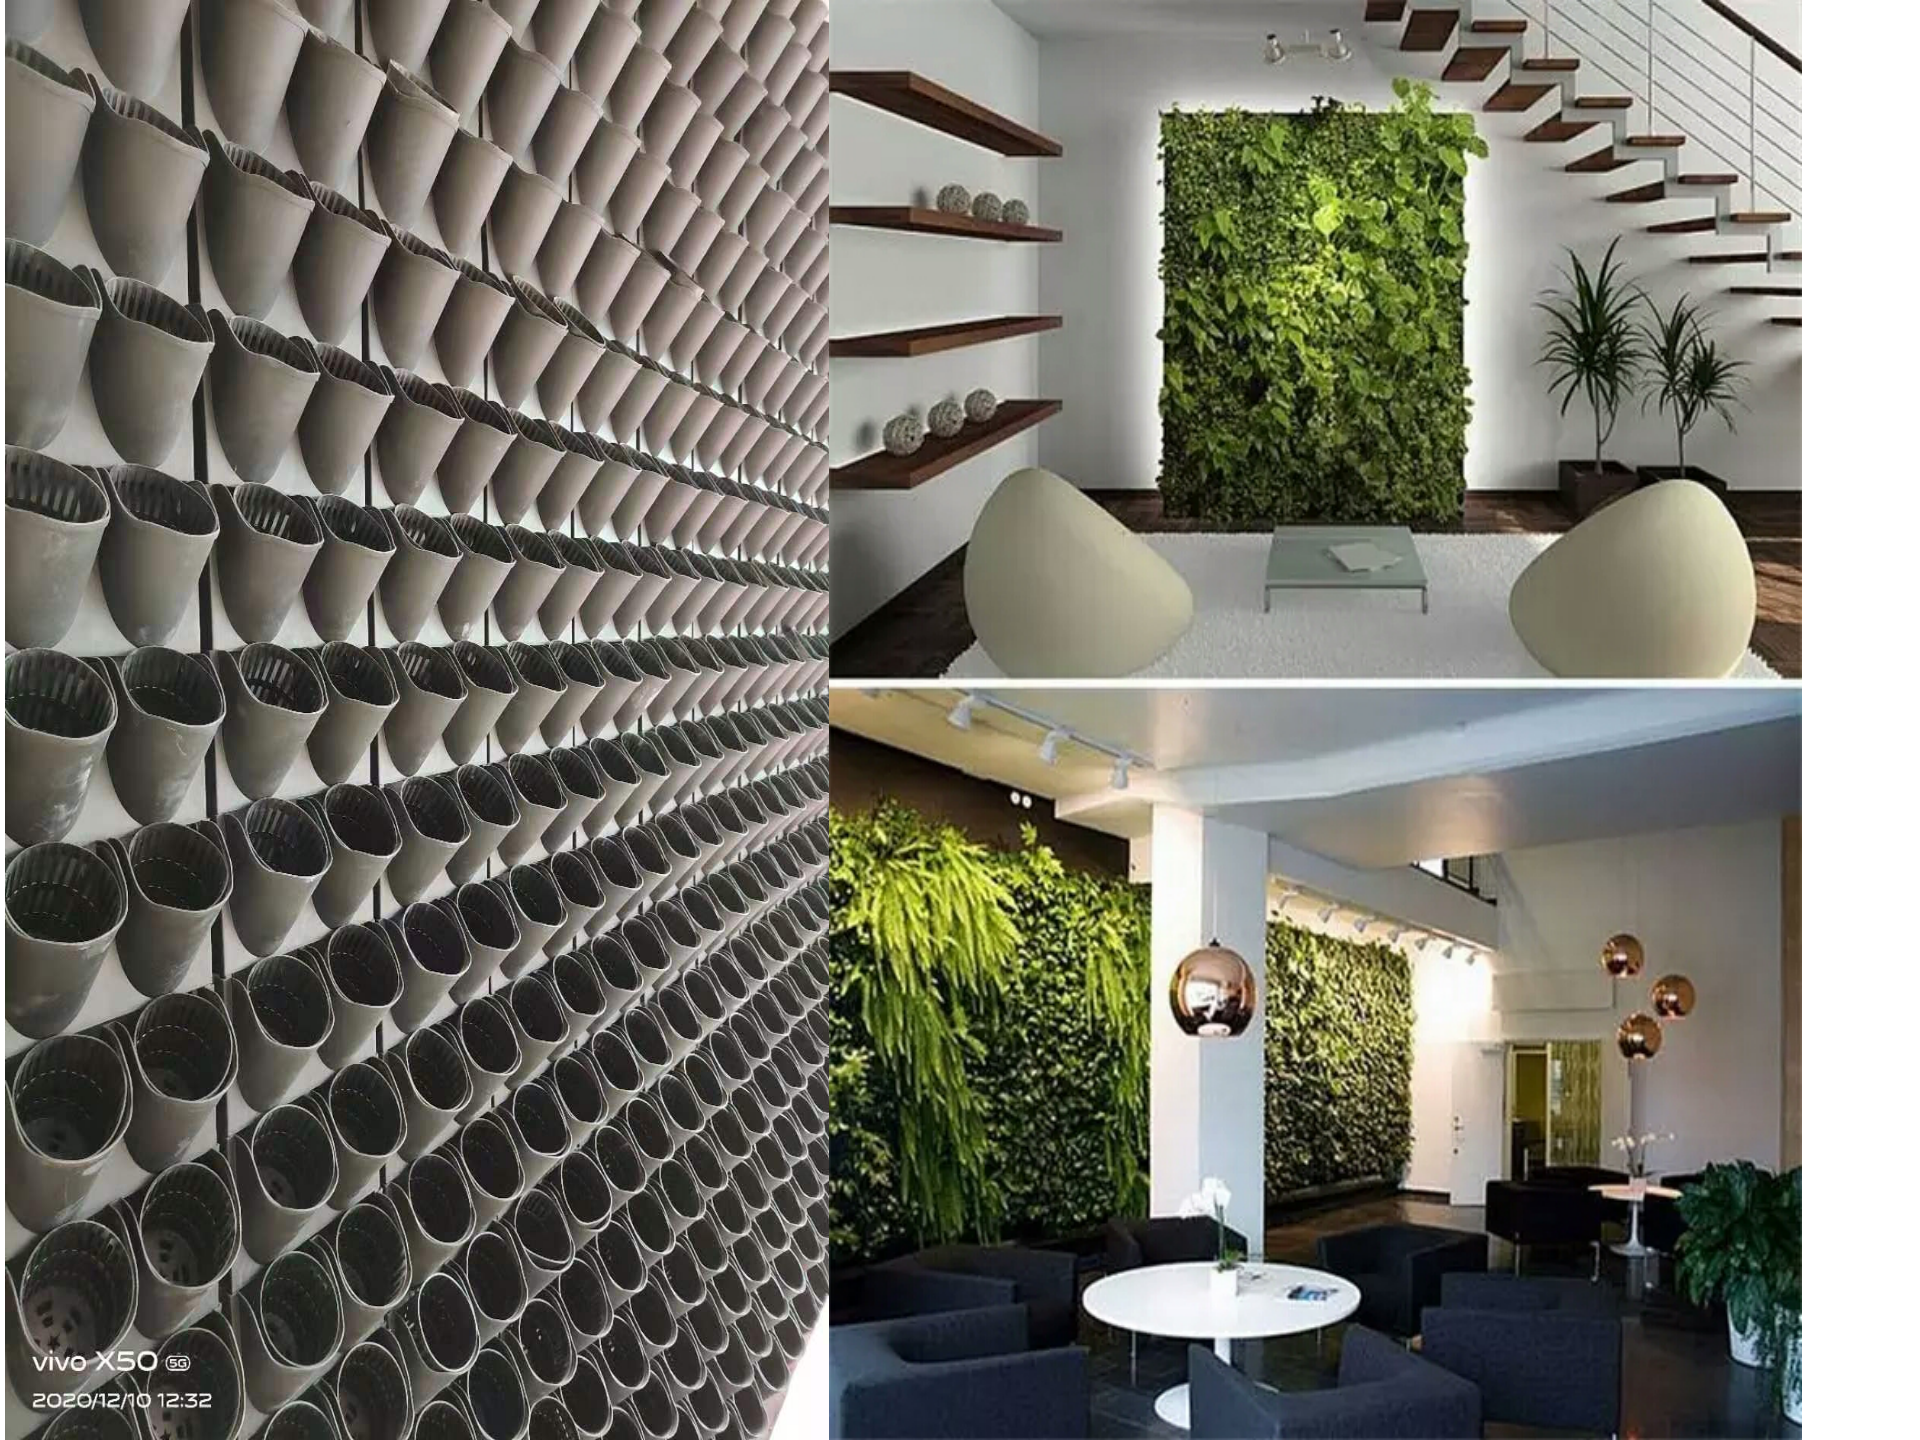 圣恩园艺 垂直绿化 围挡墙体绿化设计围挡墙面绿化公司 室内生态墙安装